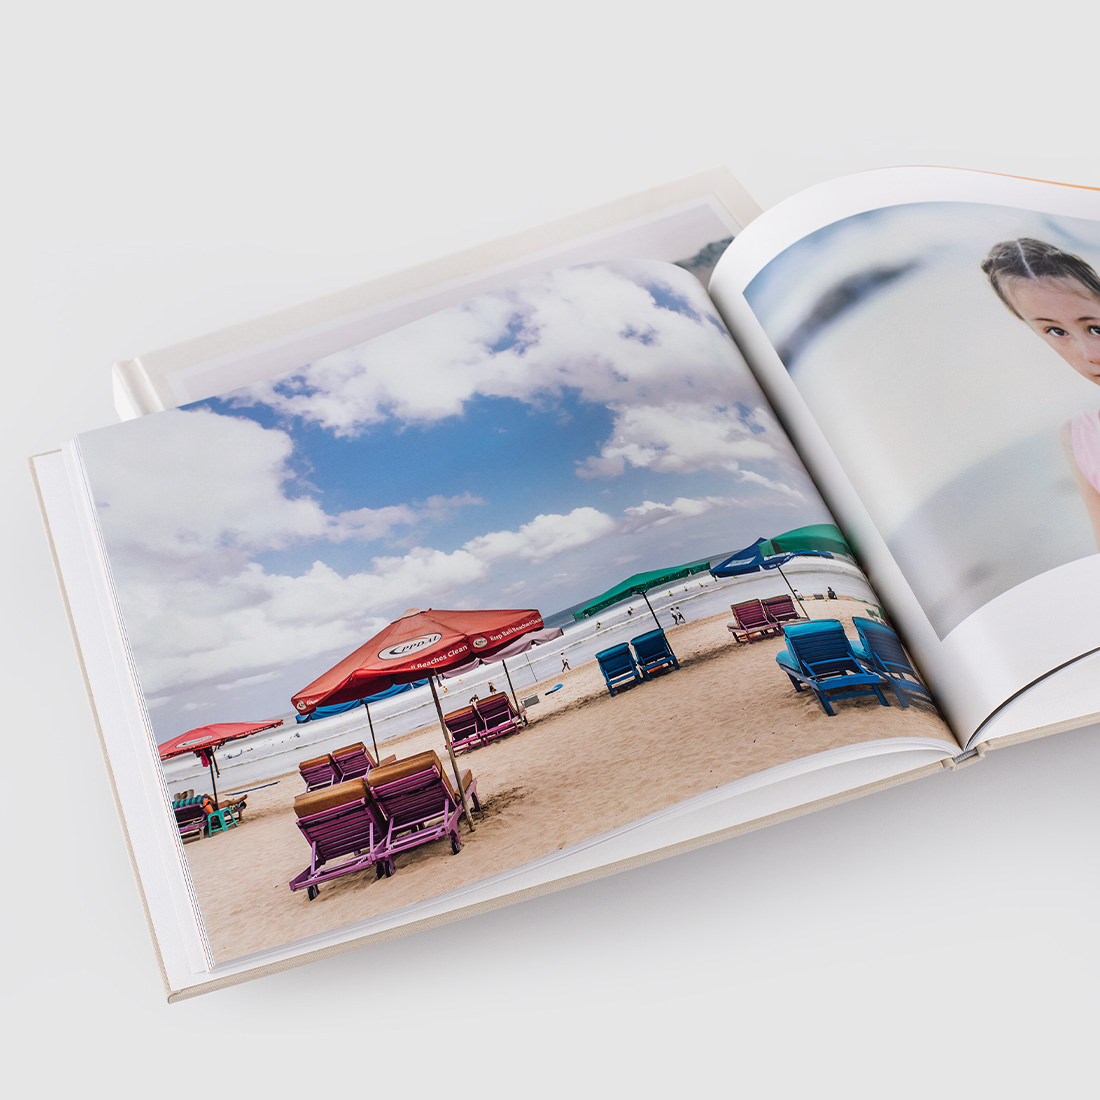 Geöffnetes klassisches Fotobuch mit Strandbild.